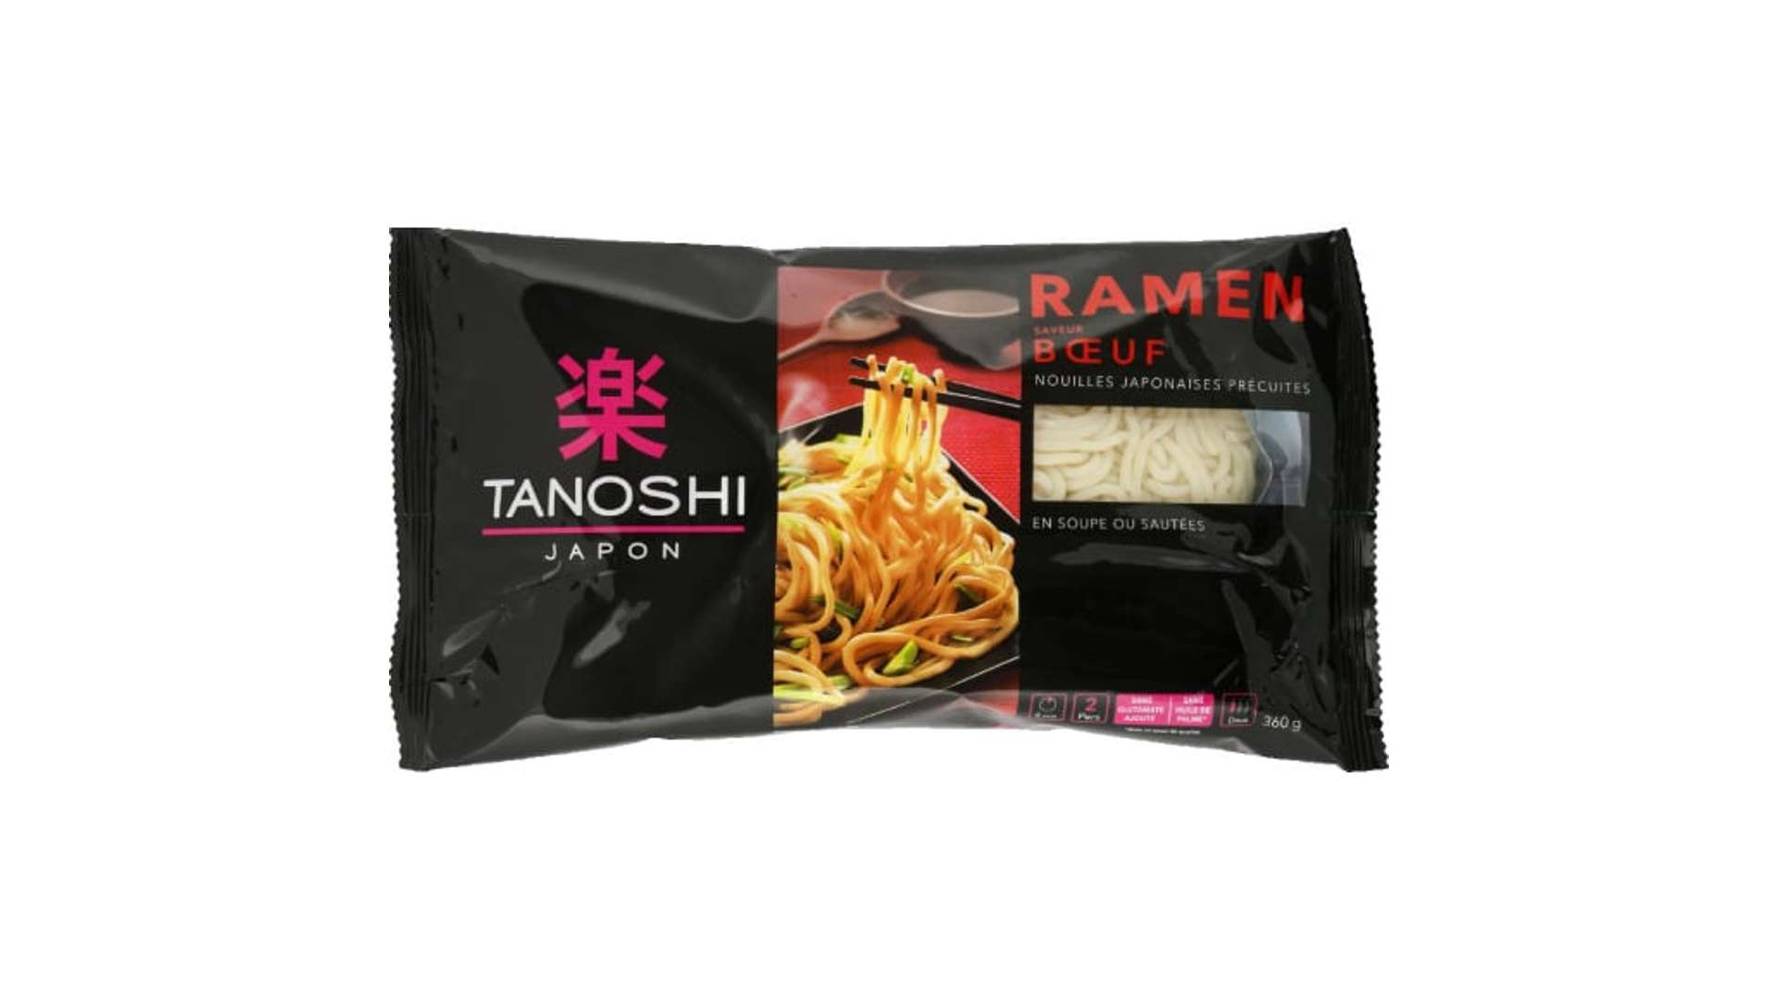 Tanoshi - Ramen nouilles japonaises bœuf